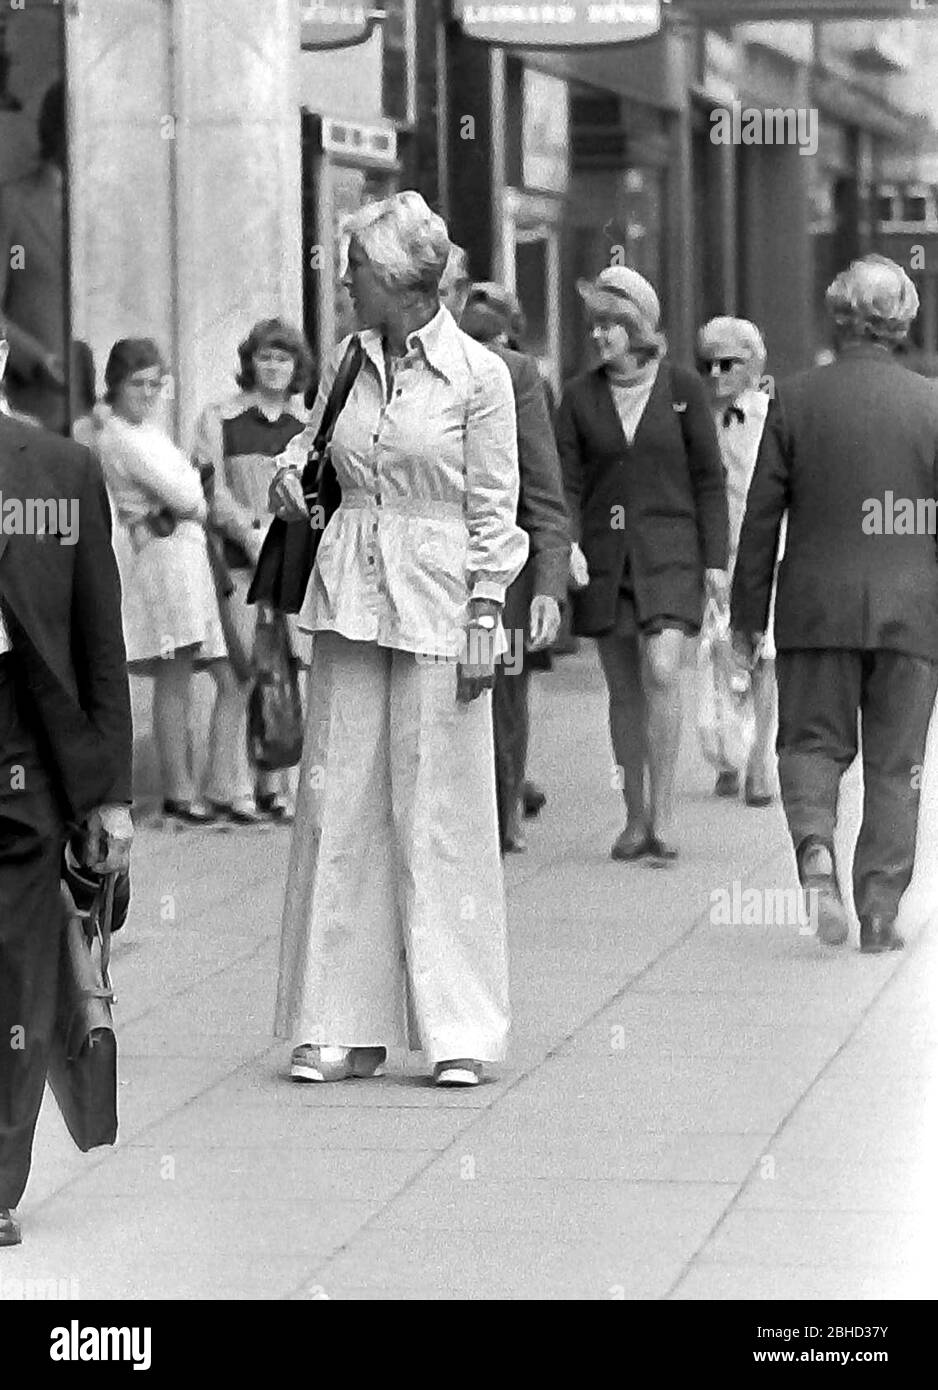 Das tägliche Leben auf den Straßen in Manchester, England, Großbritannien im Jahr 1974. Eine elegant gekleidete Frau mit einem Hosenanzug steht auf dem Bürgersteig. Stockfoto